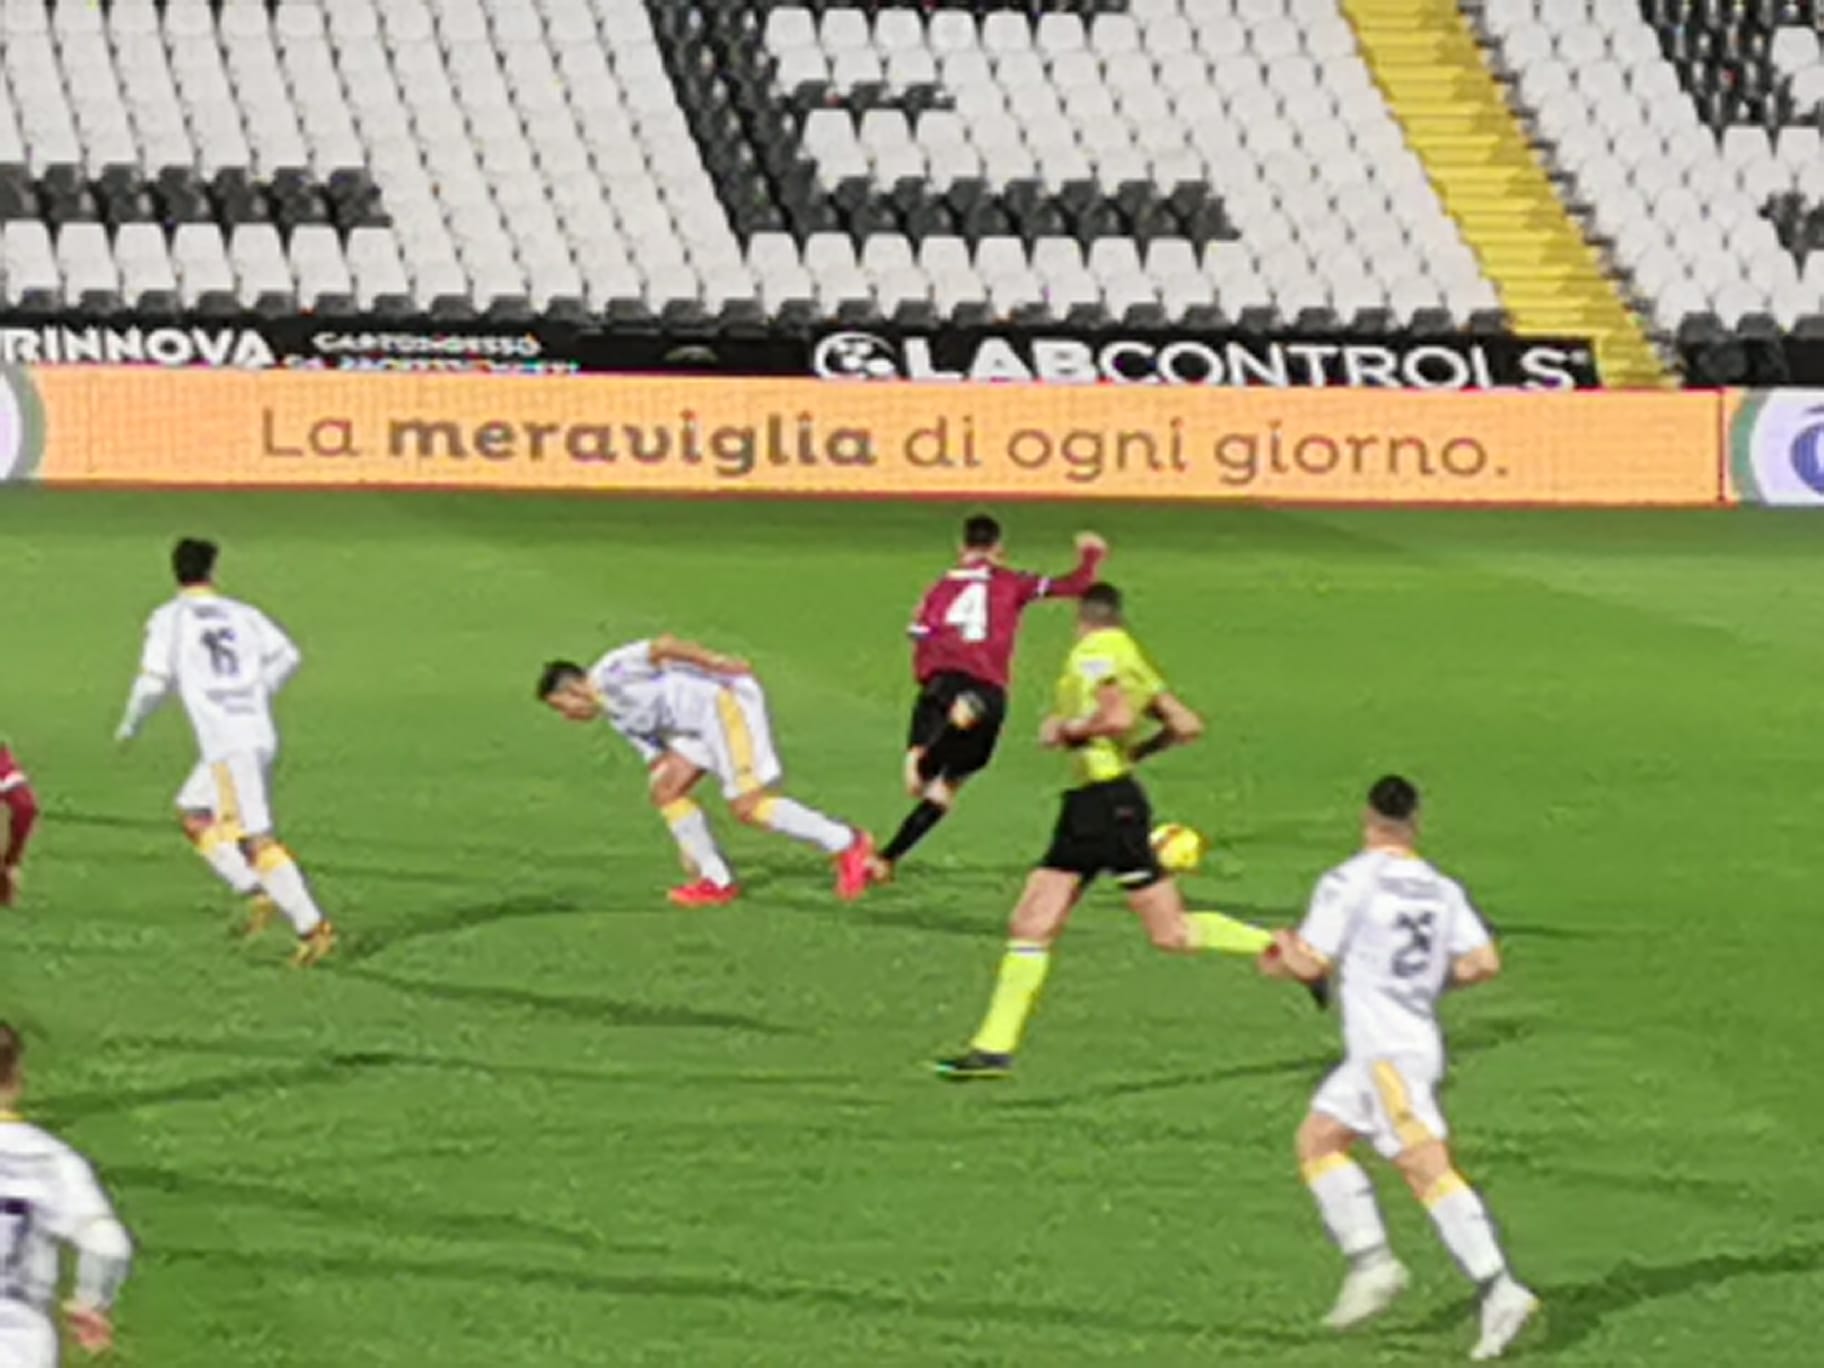  Serie C / 18a / Modena ospita il Gubbio, Cesena fuori